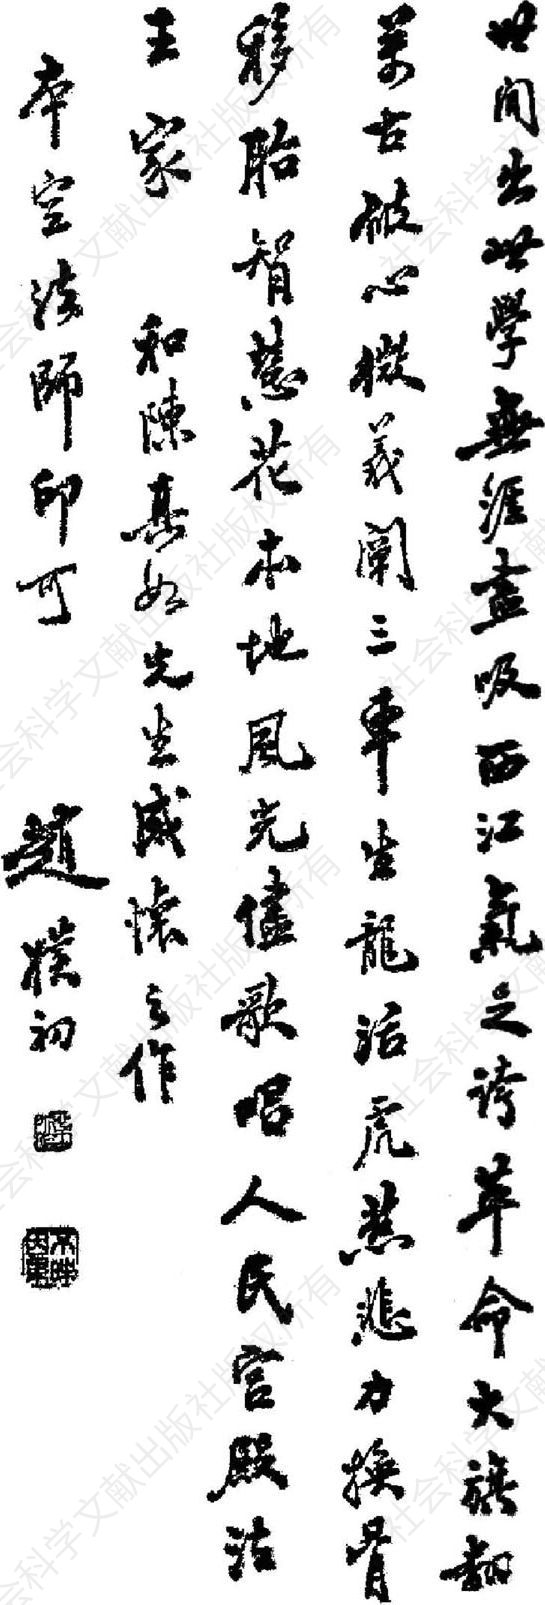 赵朴初1953年在初版《烟水集》上的题词